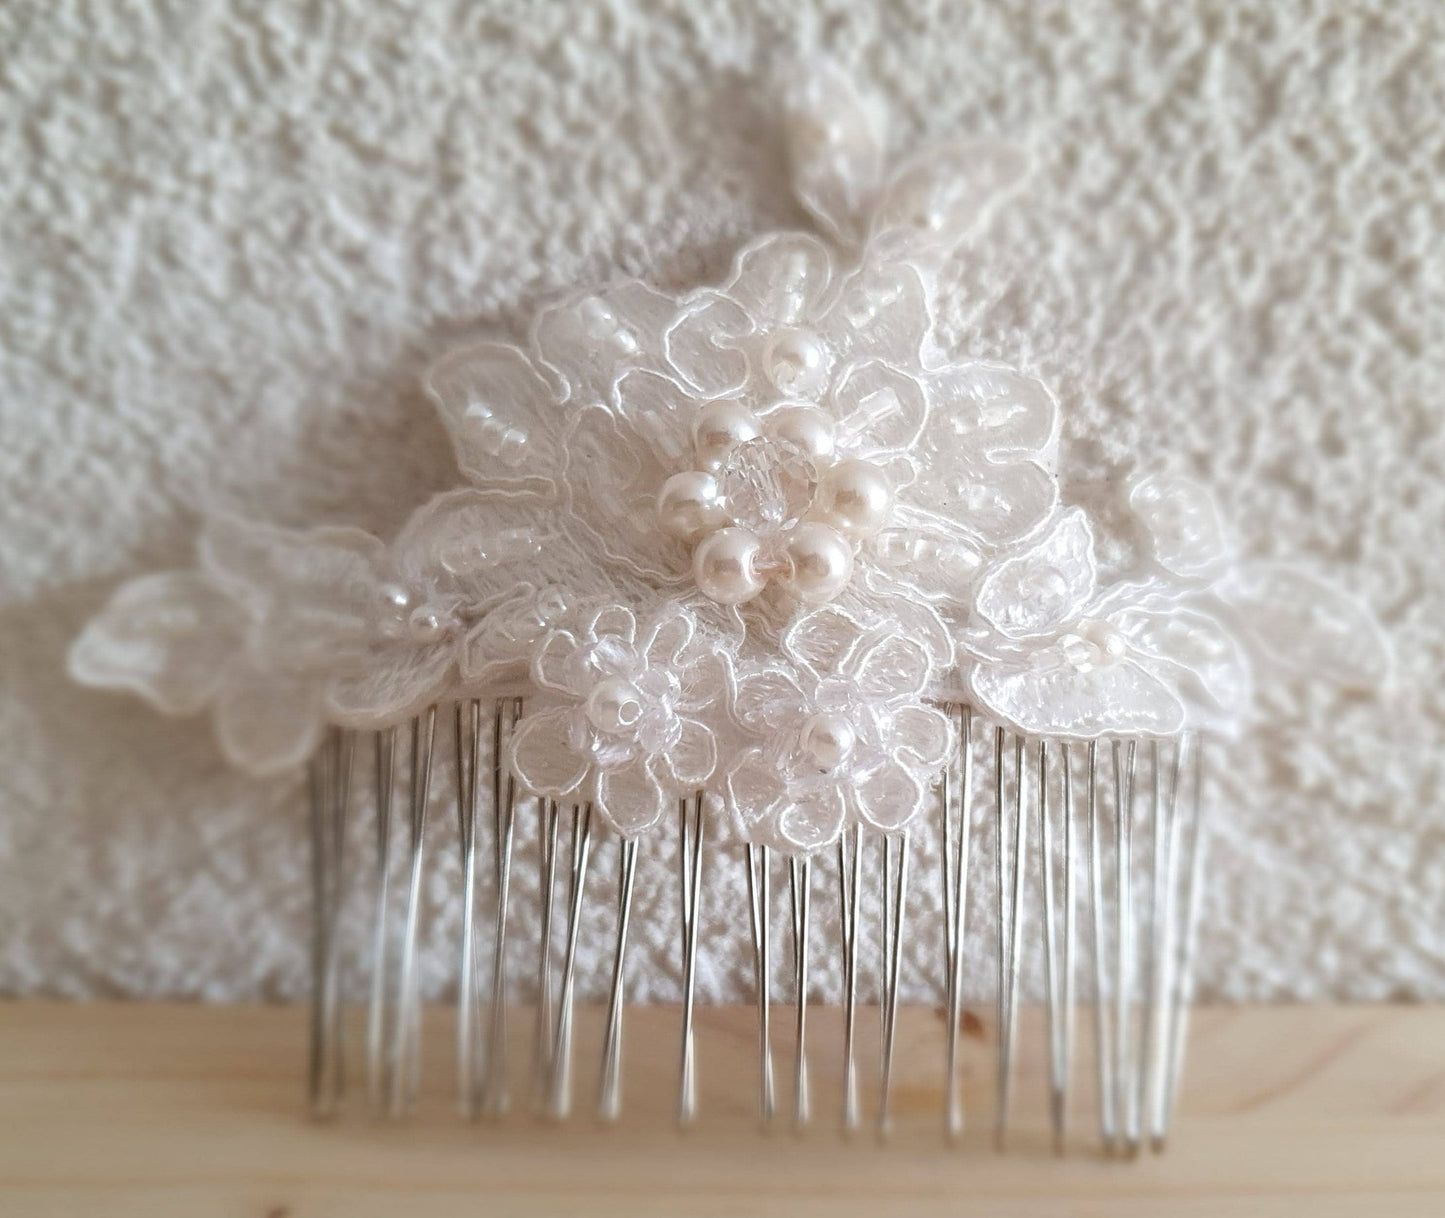 Peineta de novia moderna hecha a mano con cuentas blancas y perlas - peineta de metal